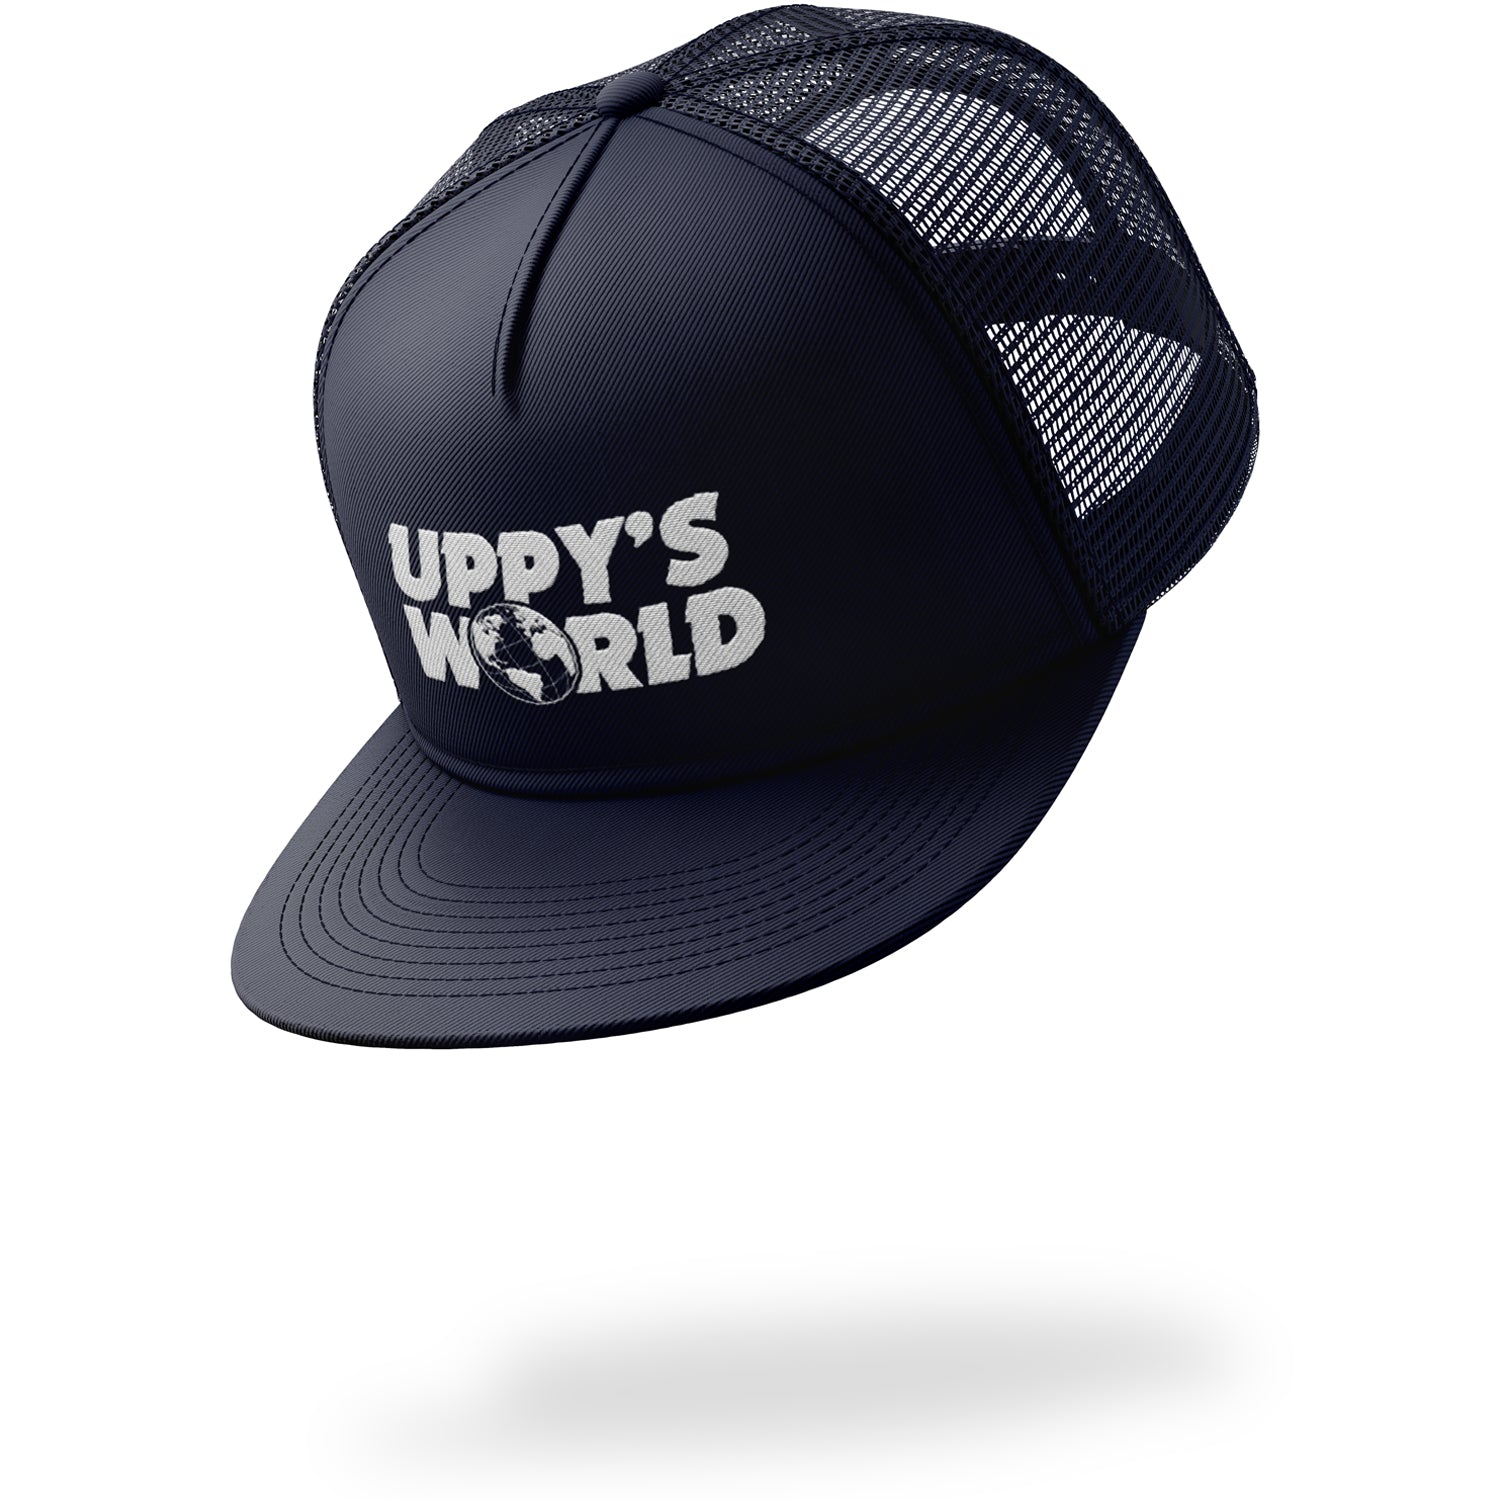 UPPY'S WORLD - NAVY